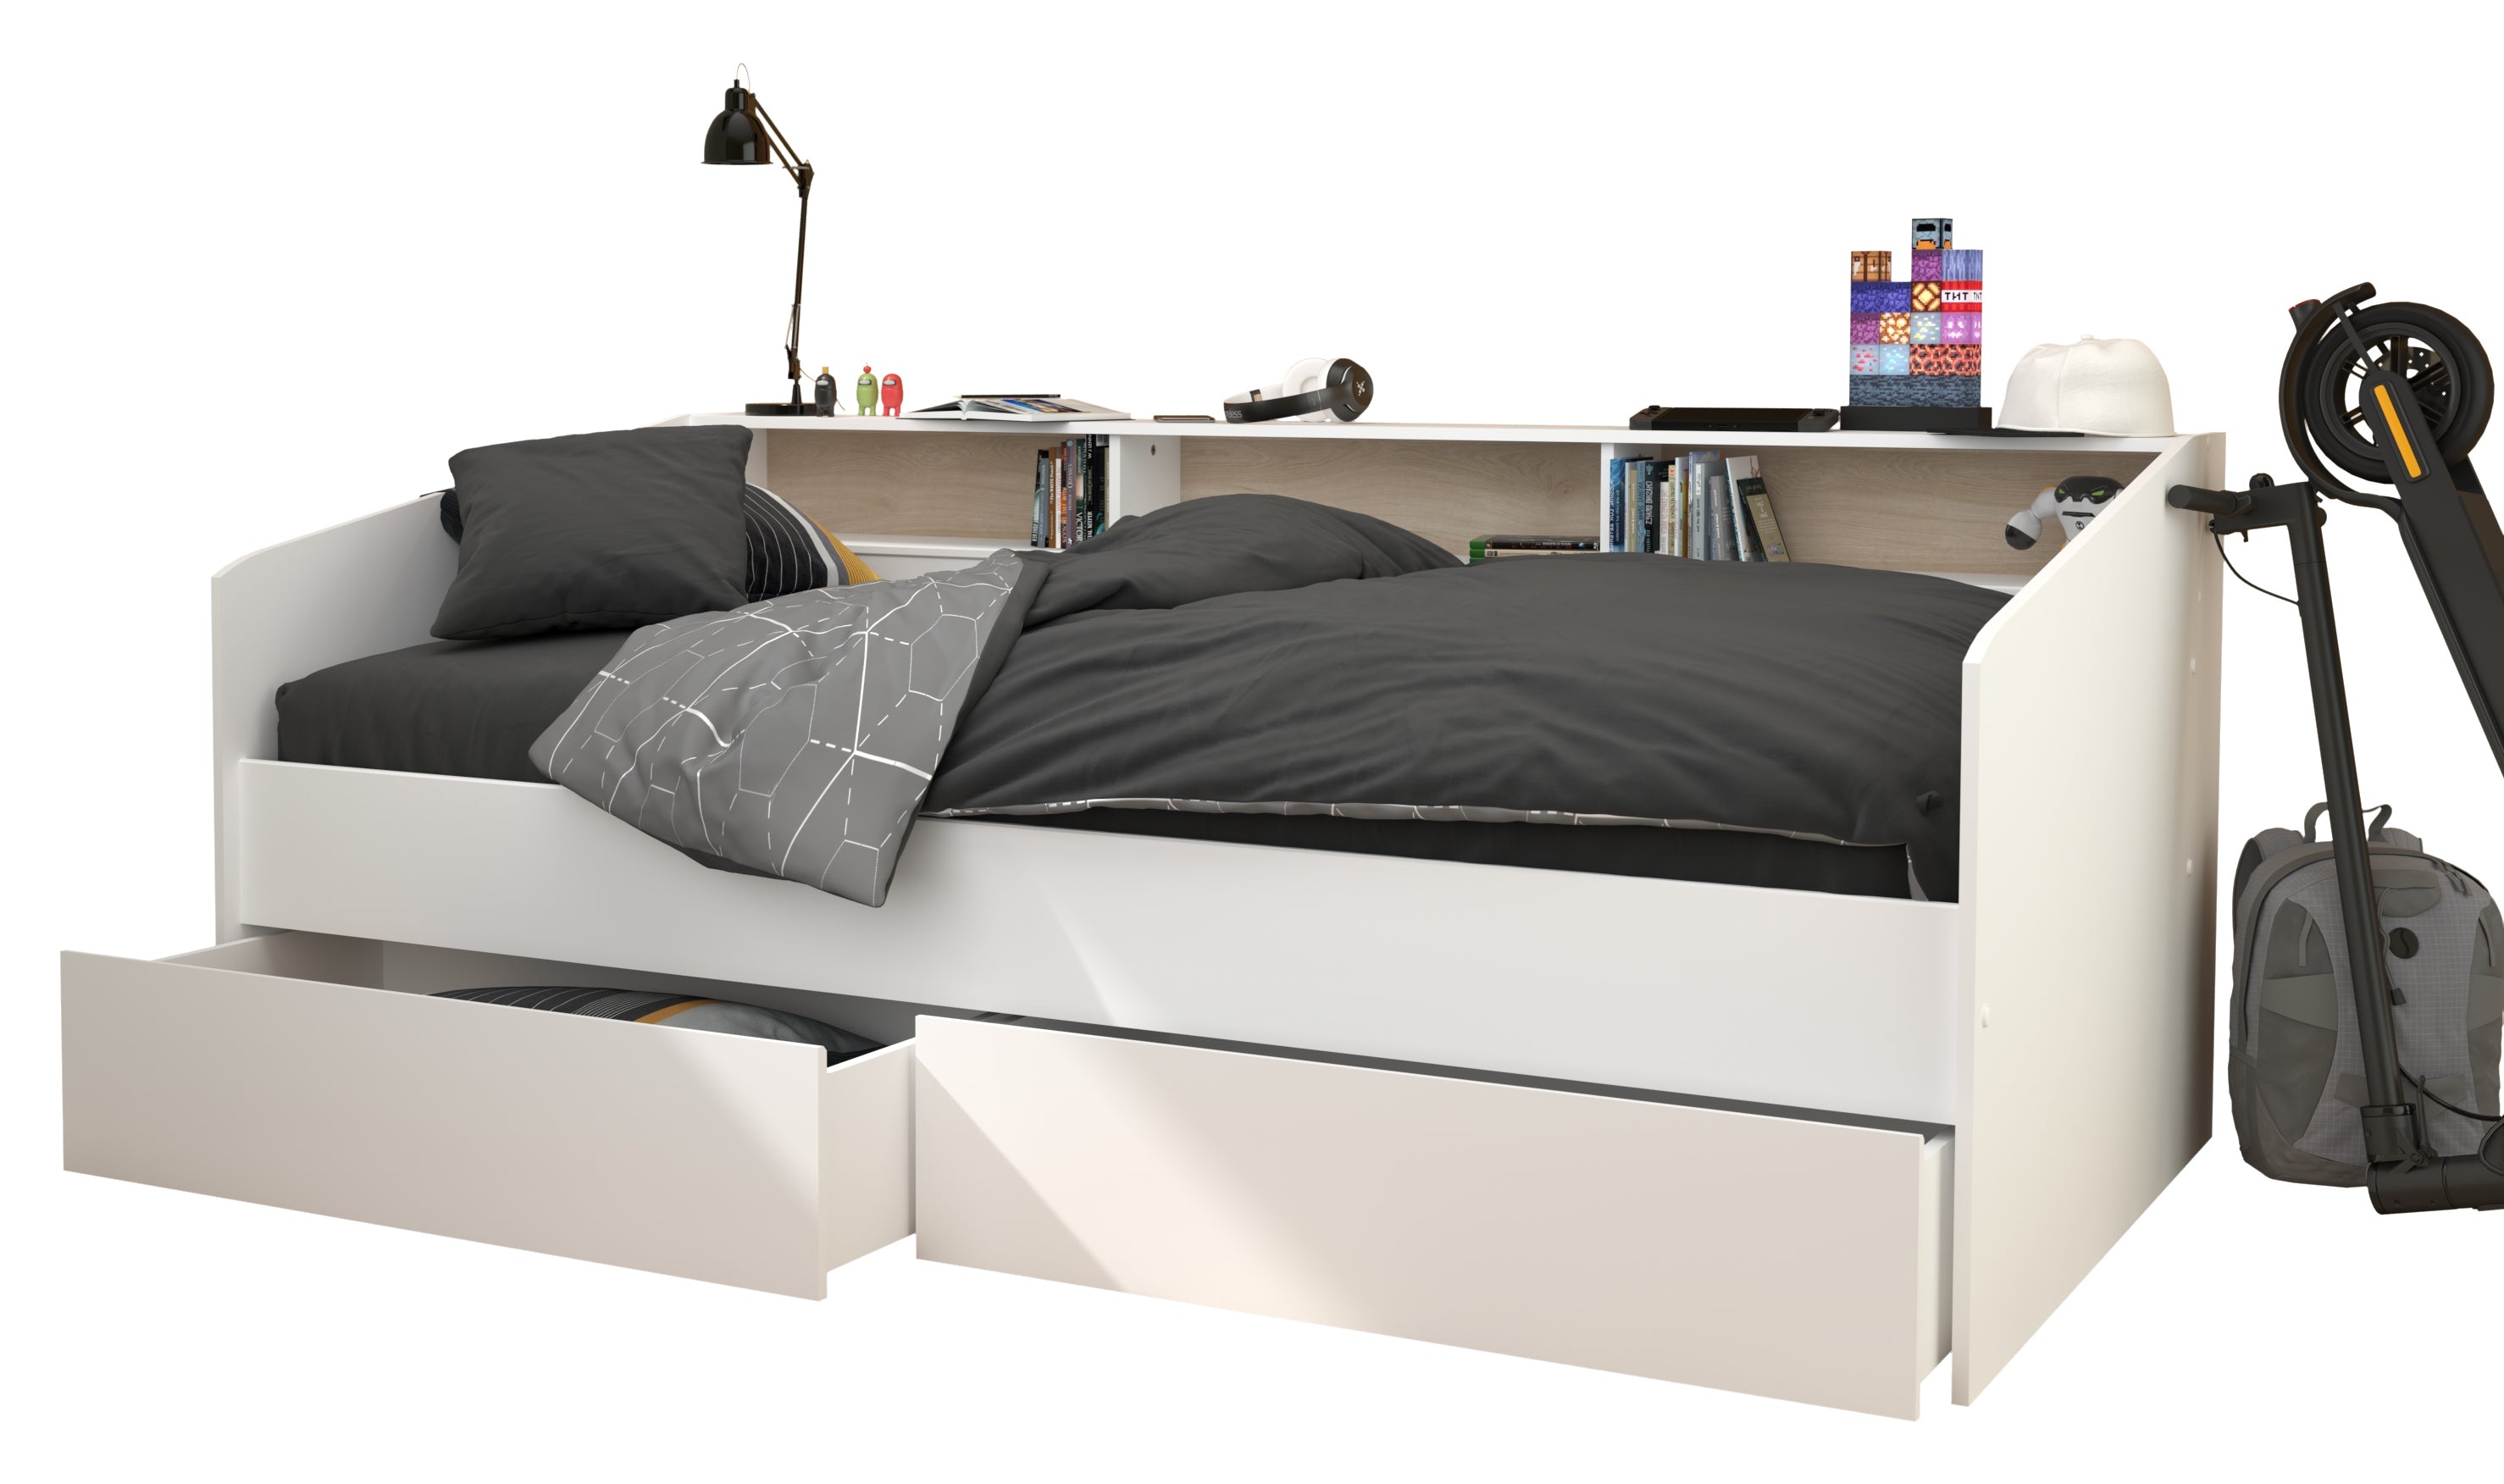 Funktionsbett Sleep Parisot inkl. 2 Bettschubkästen Regal Jugendbett Bettliege Bett weiß 90*200 cm